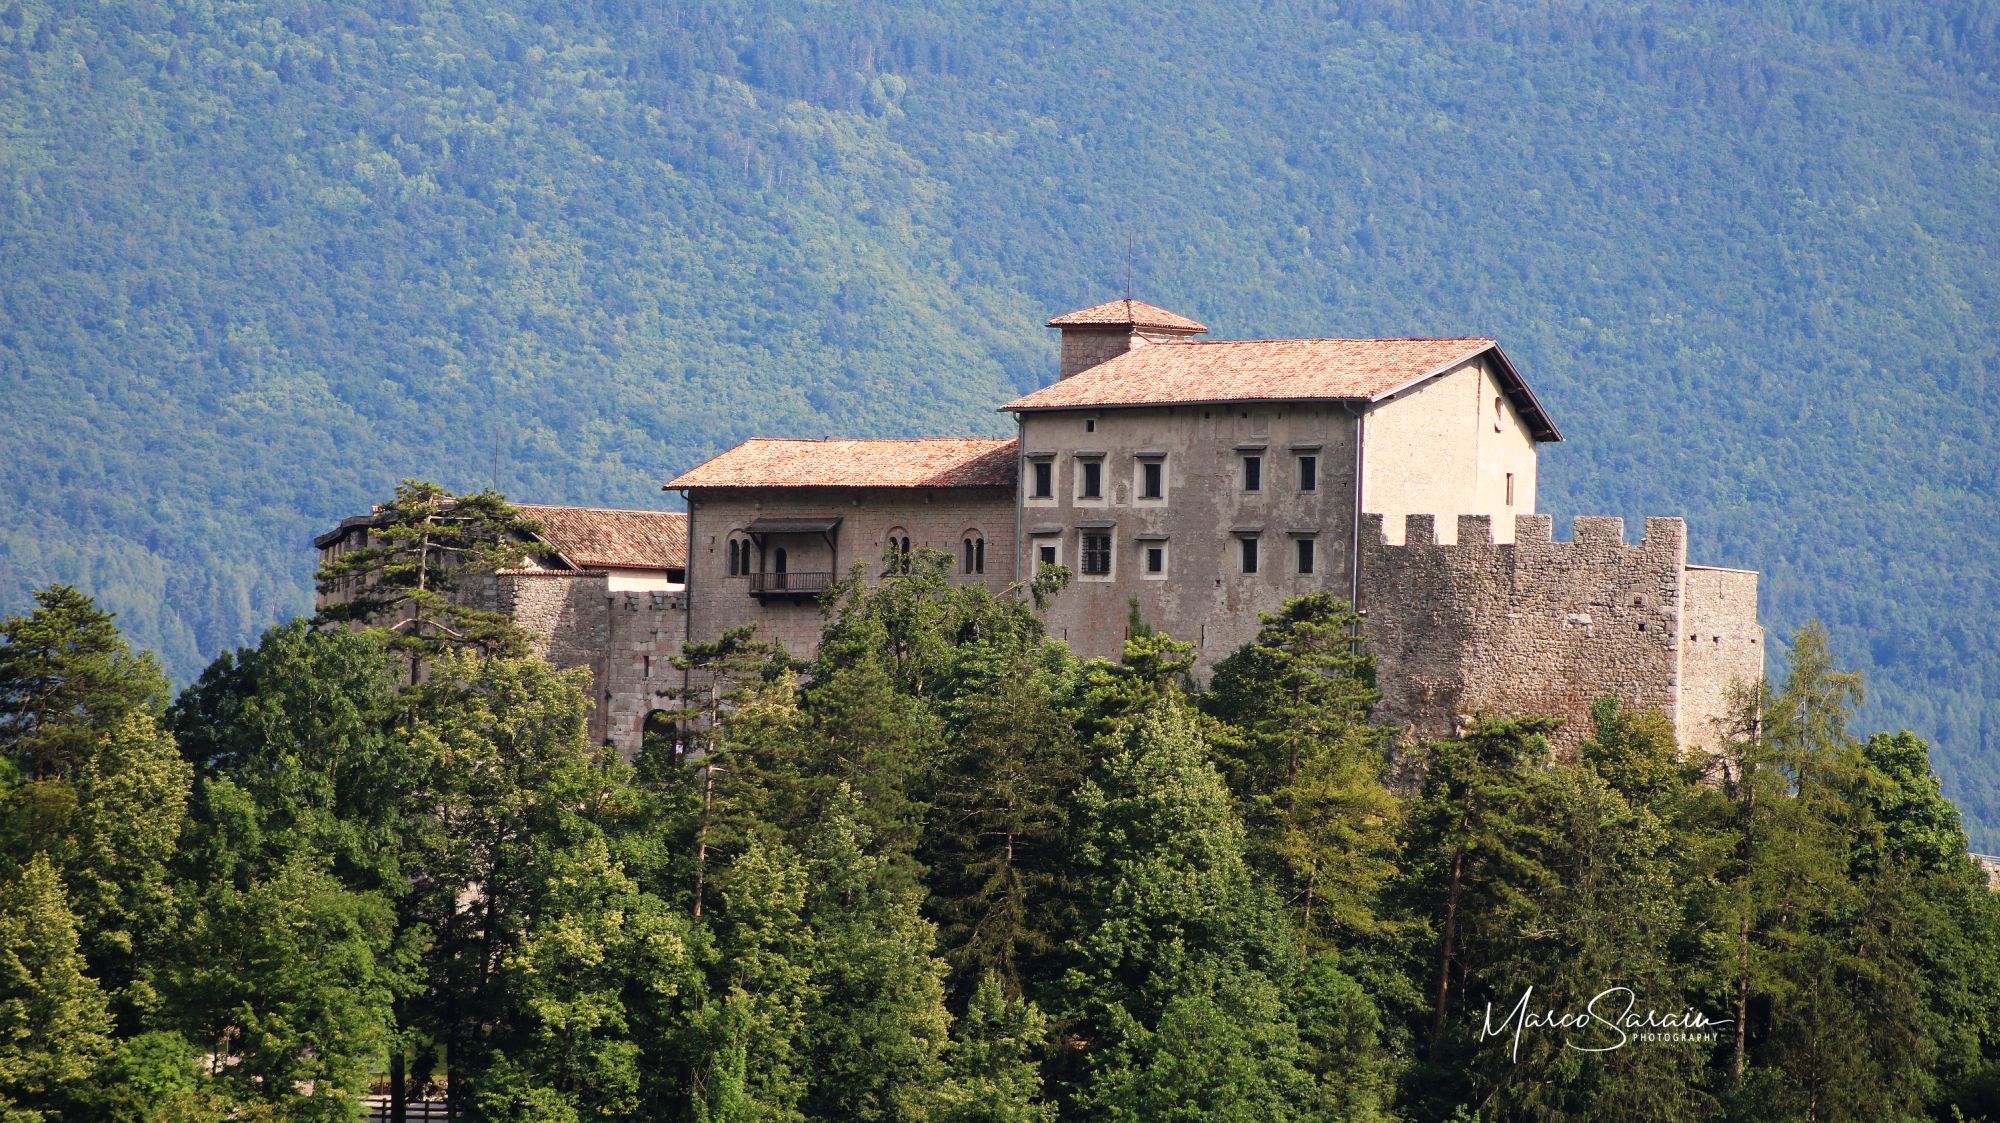 Trentino 2020